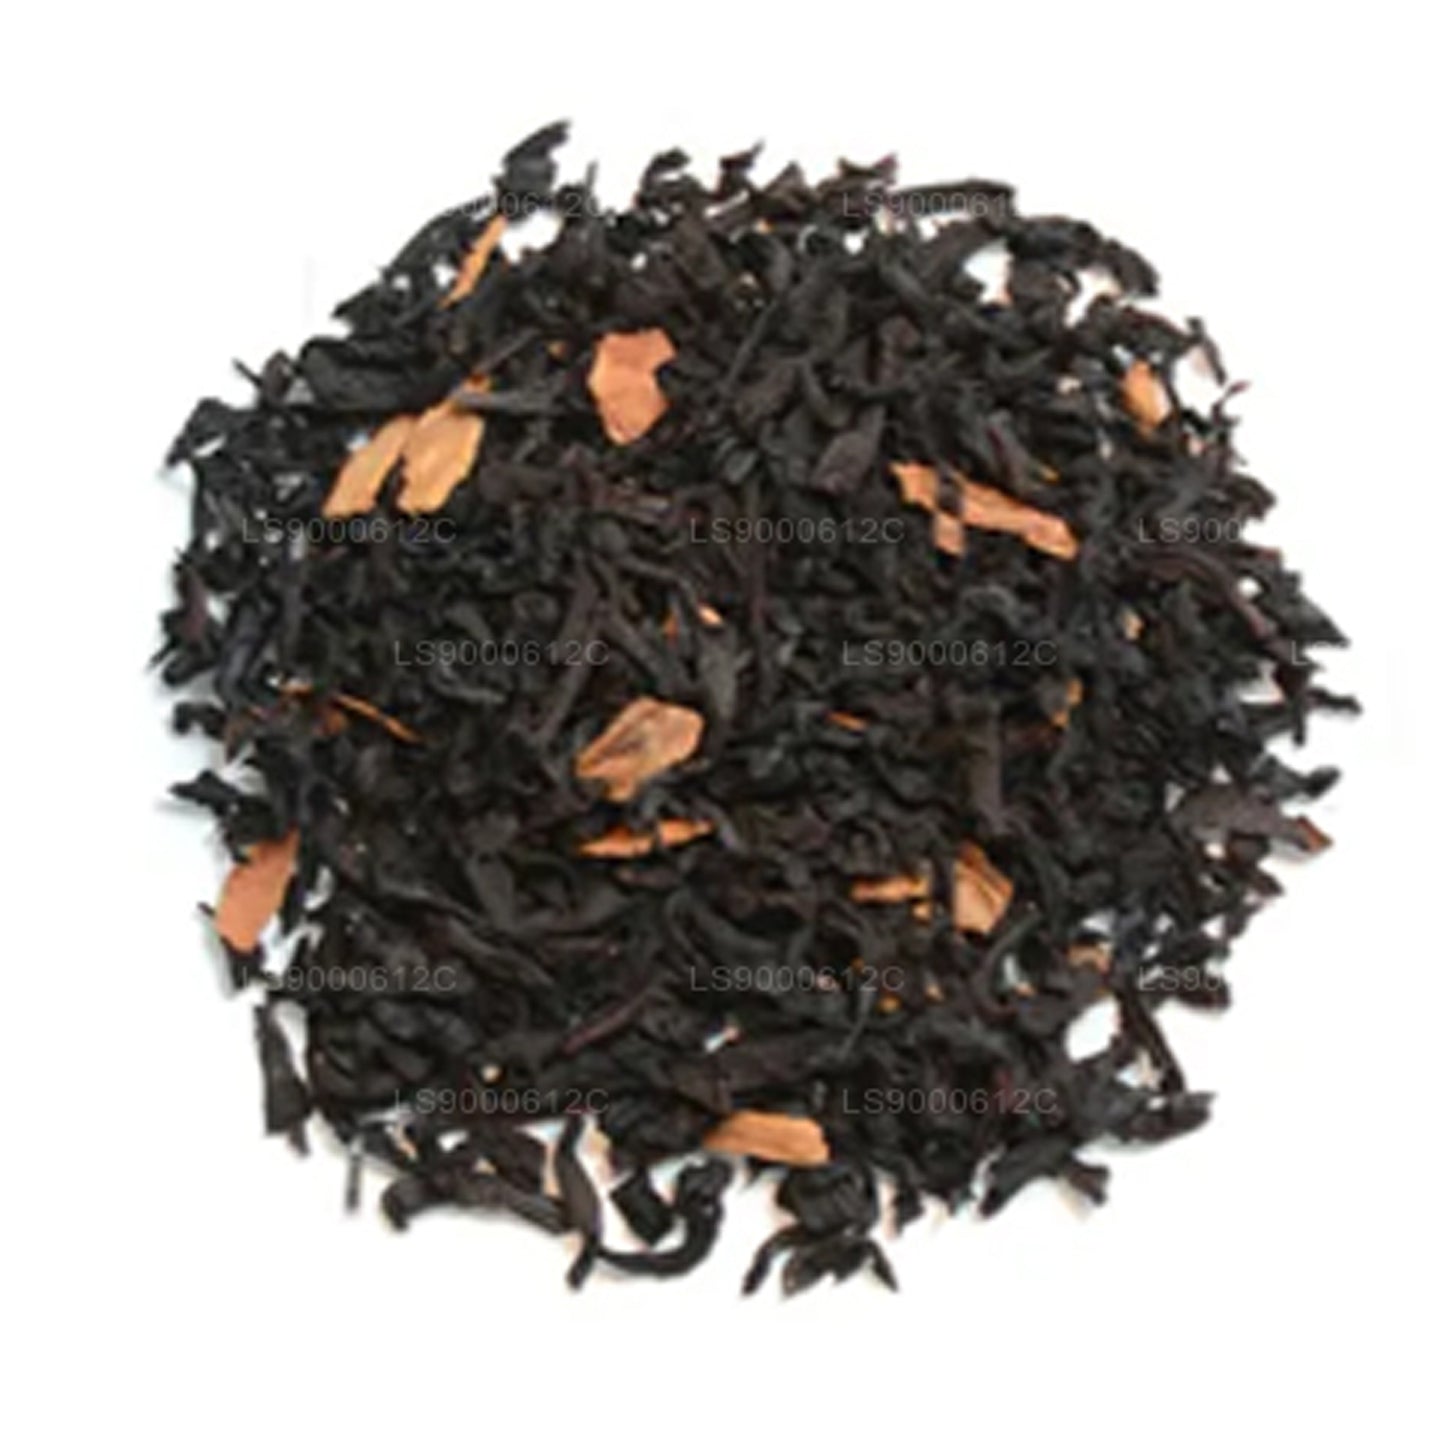 Jaf Tea Seasonal Cheer - Té negro con sabor a caramelo, vainilla y canela (50 g)